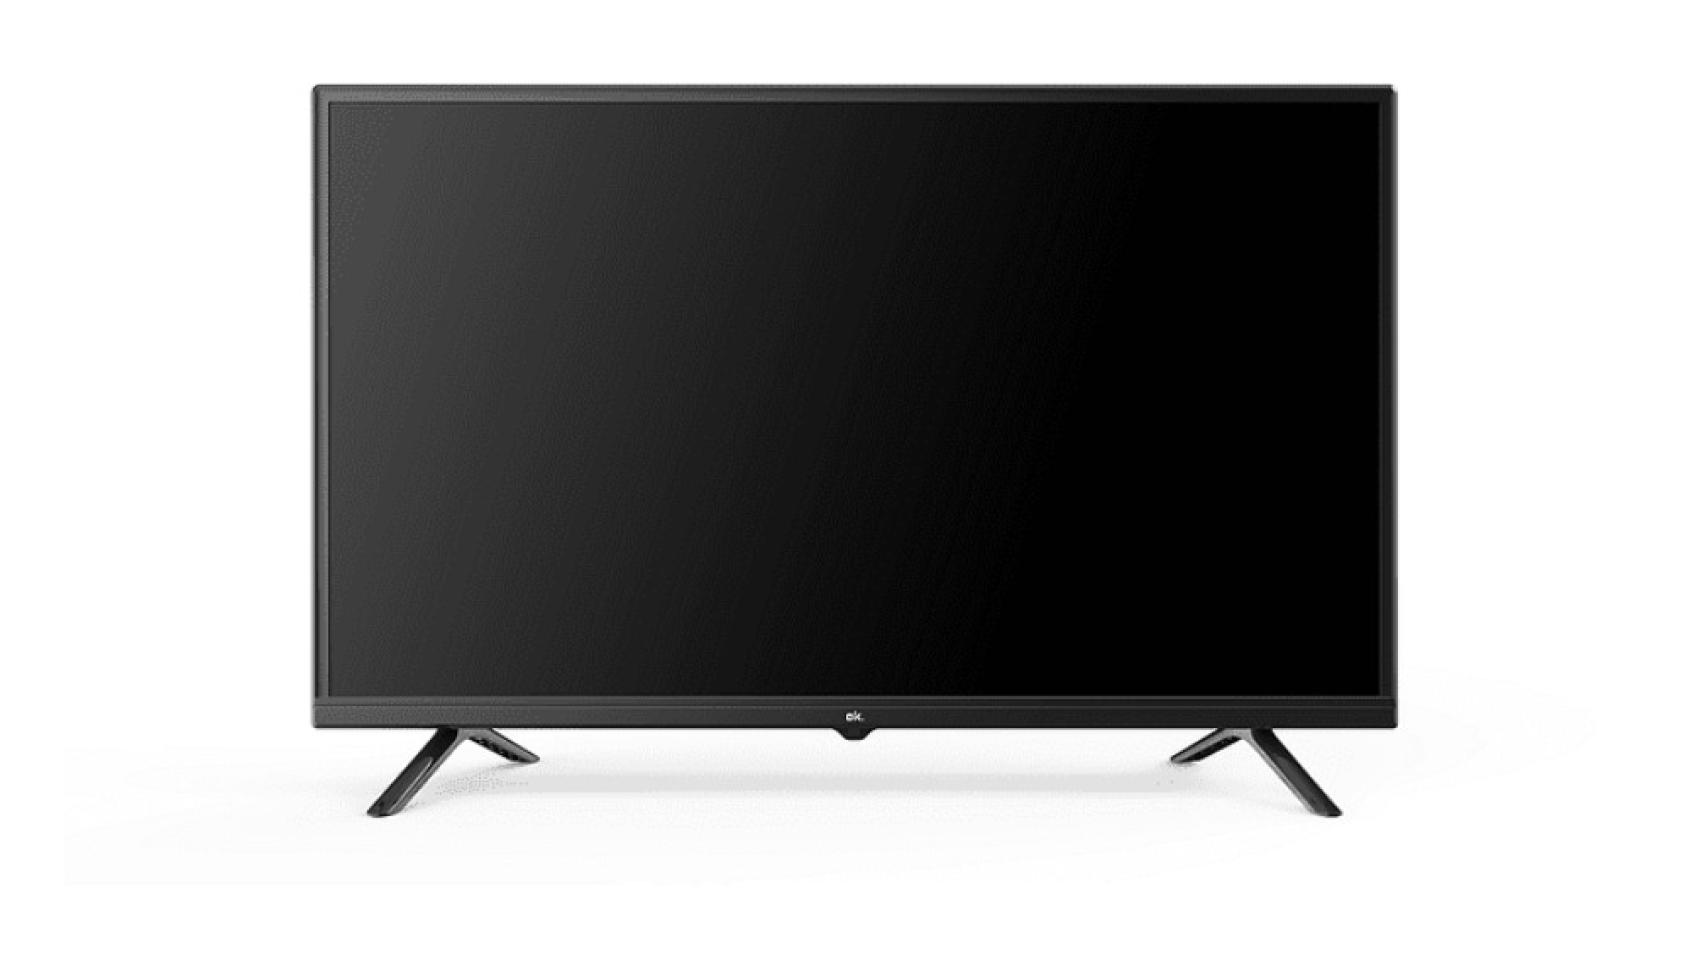 MediaMarkt arrasa en los LG Days y deja esta enorme smart TV 4K de